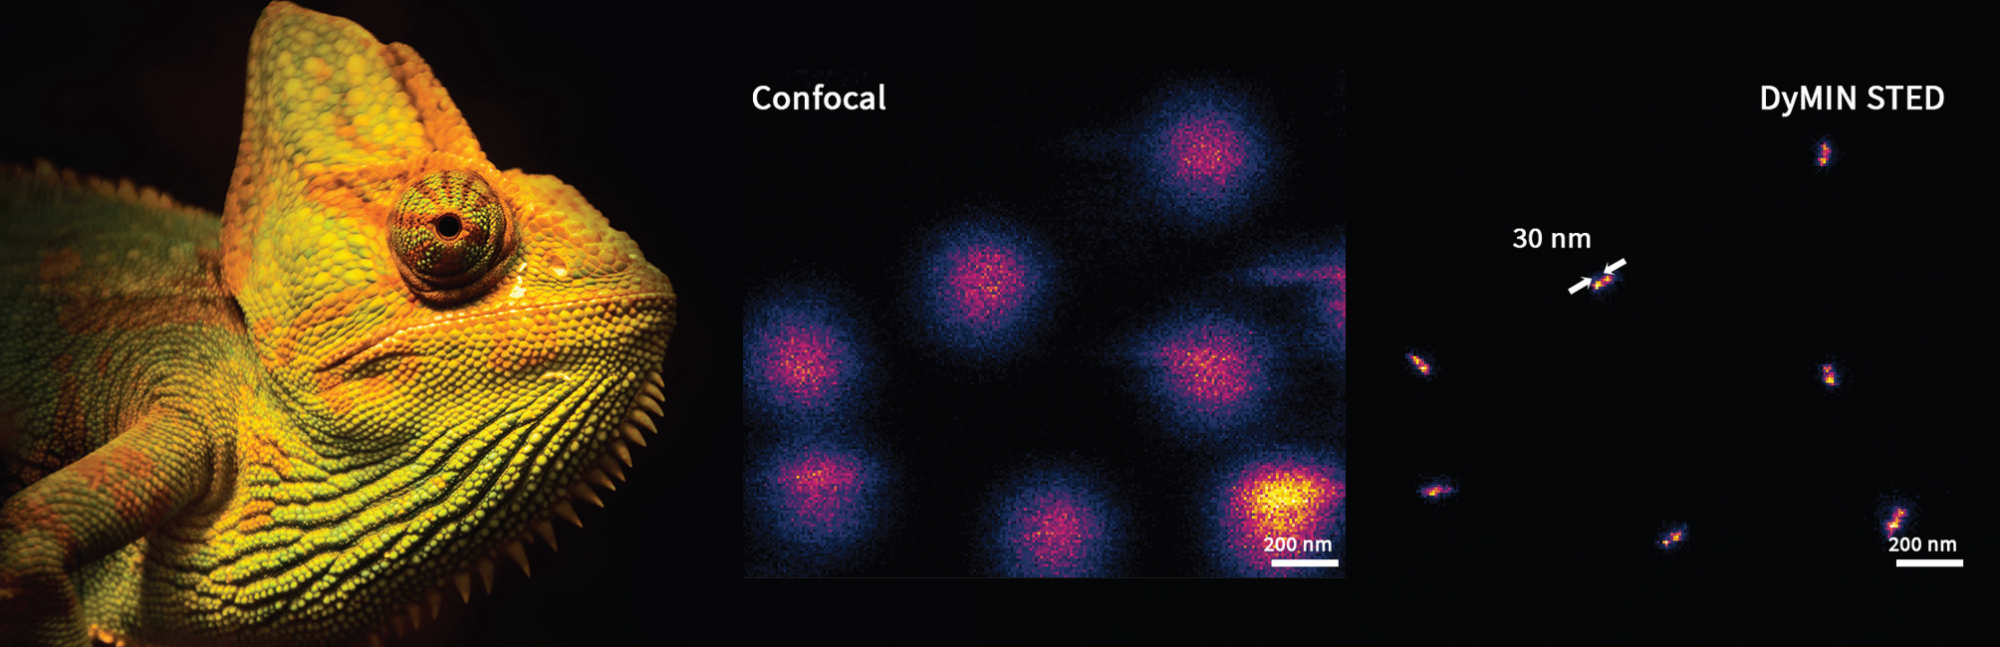 Адаптивное освещение в микроскопии сверхвысокого разрешения: снижение фототоксичности